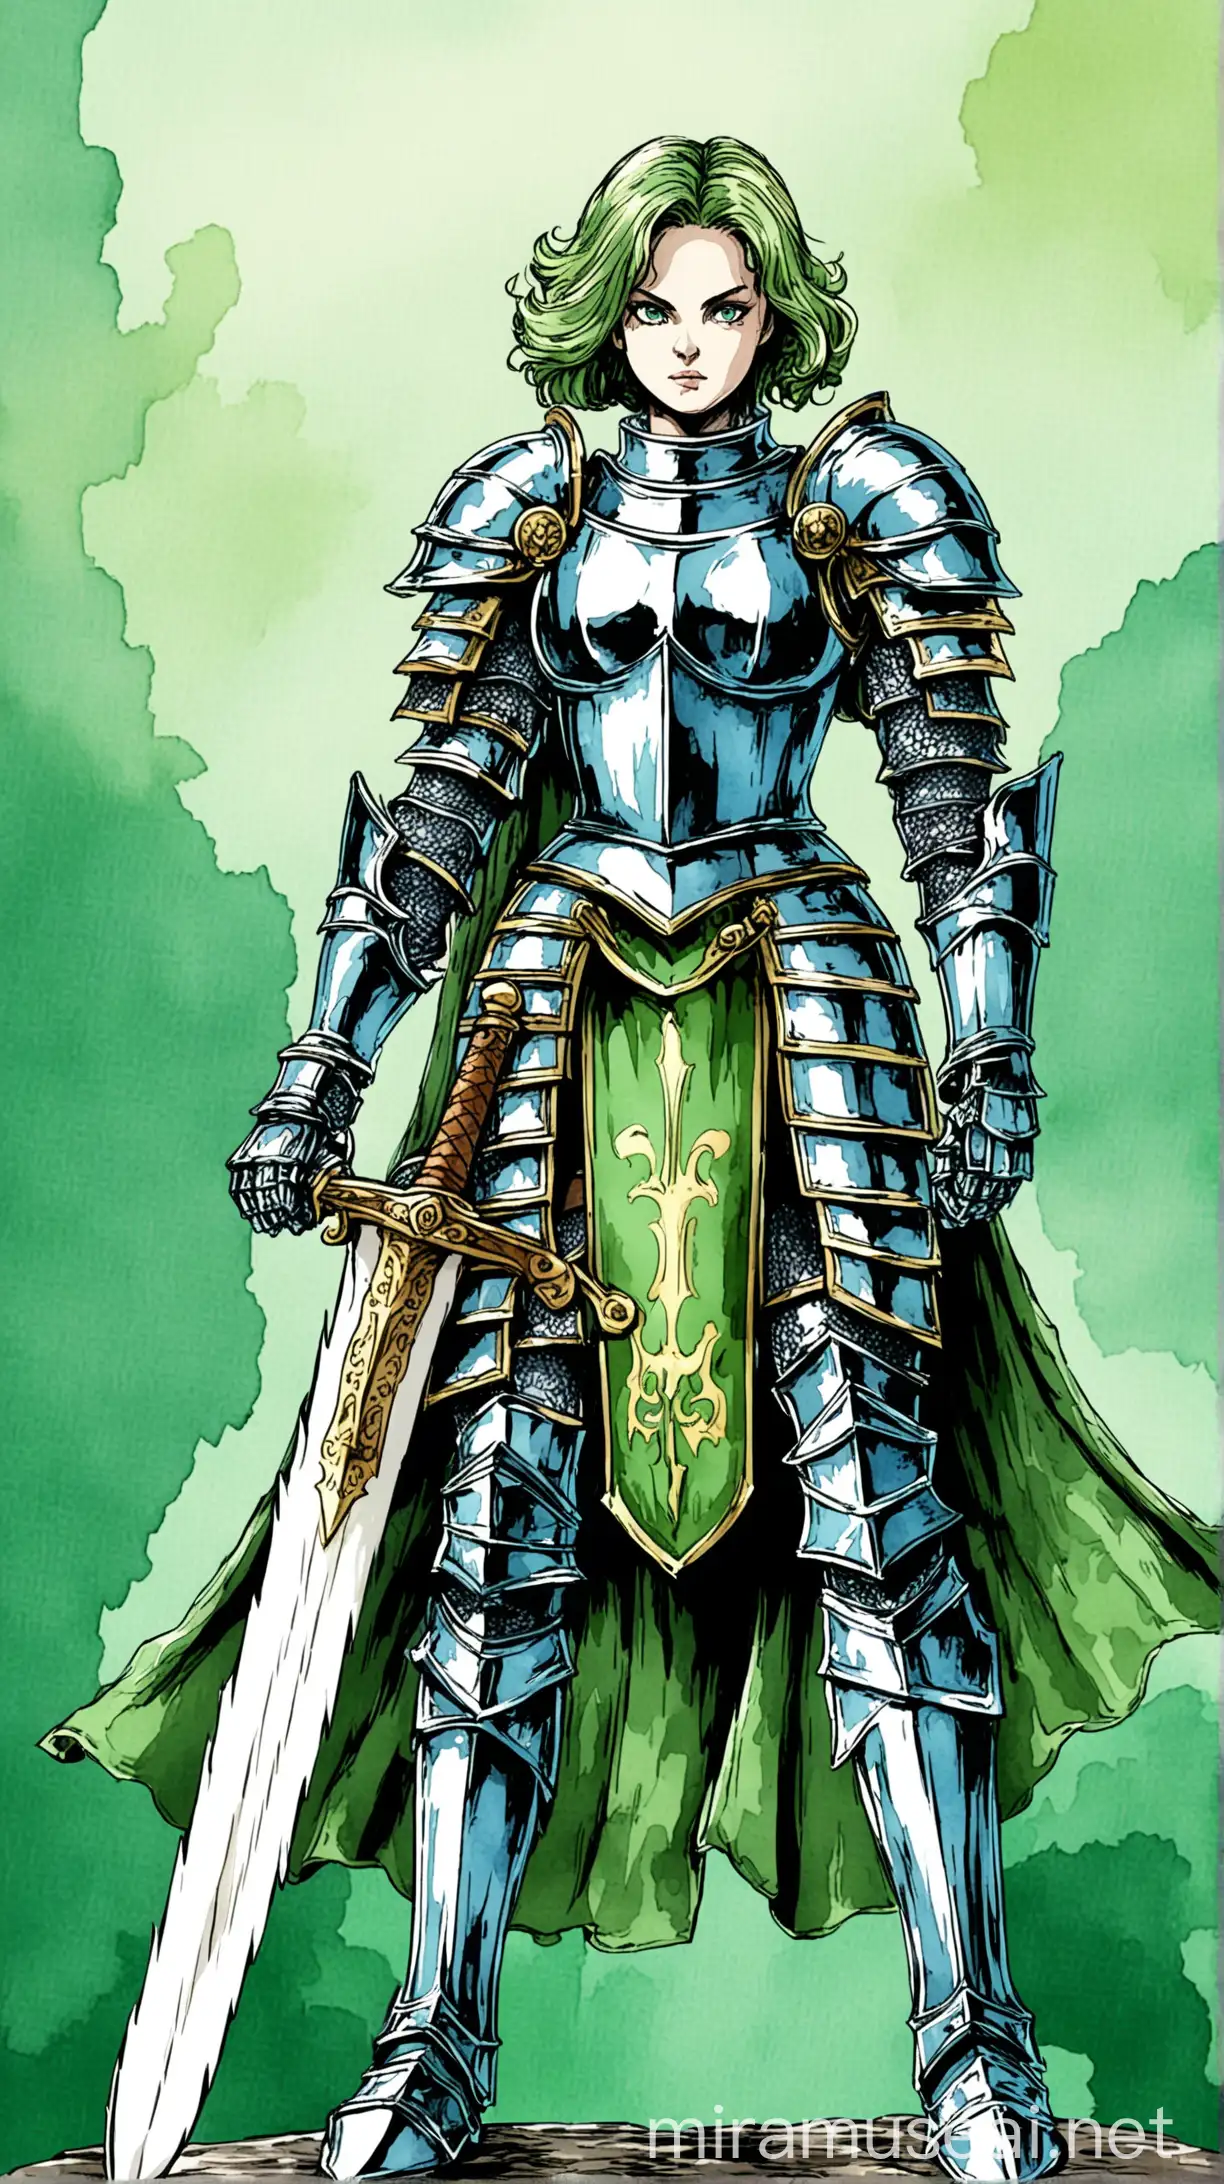 Female Knight Wielding Giant Sword in Vibrant Watercolor Scene